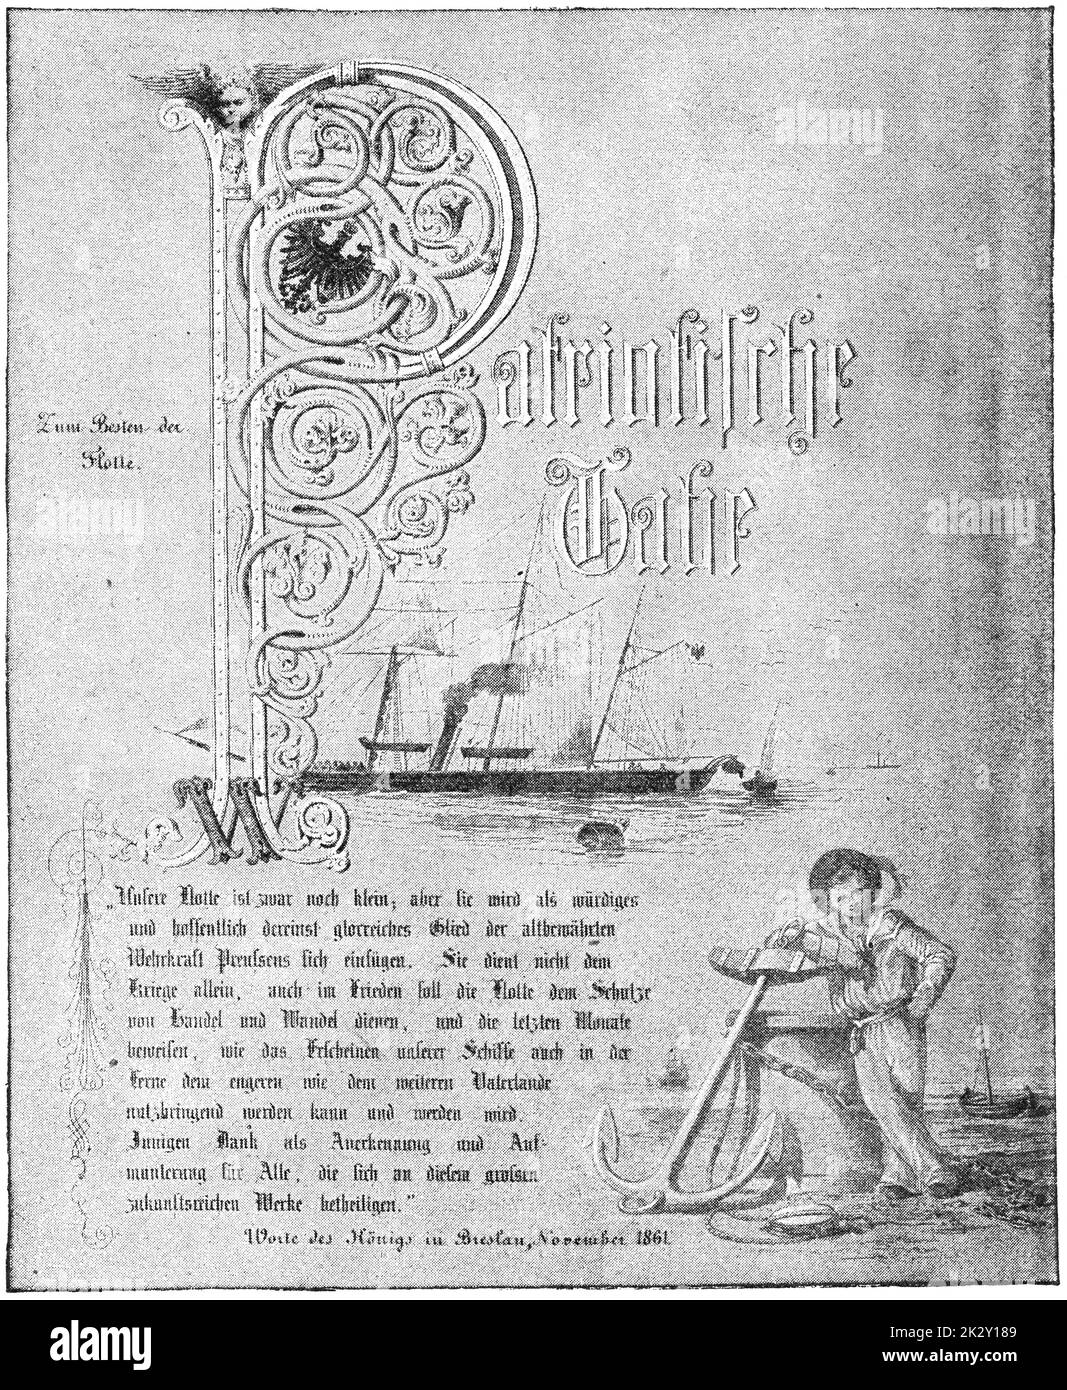 Discorso di Guglielmo i, imperatore tedesco che commemora il relitto di SMS Amazzone (1843) nel novembre 1861 al largo delle coste olandesi. Illustrazione del 19 ° secolo. Germania. Sfondo bianco. Foto Stock